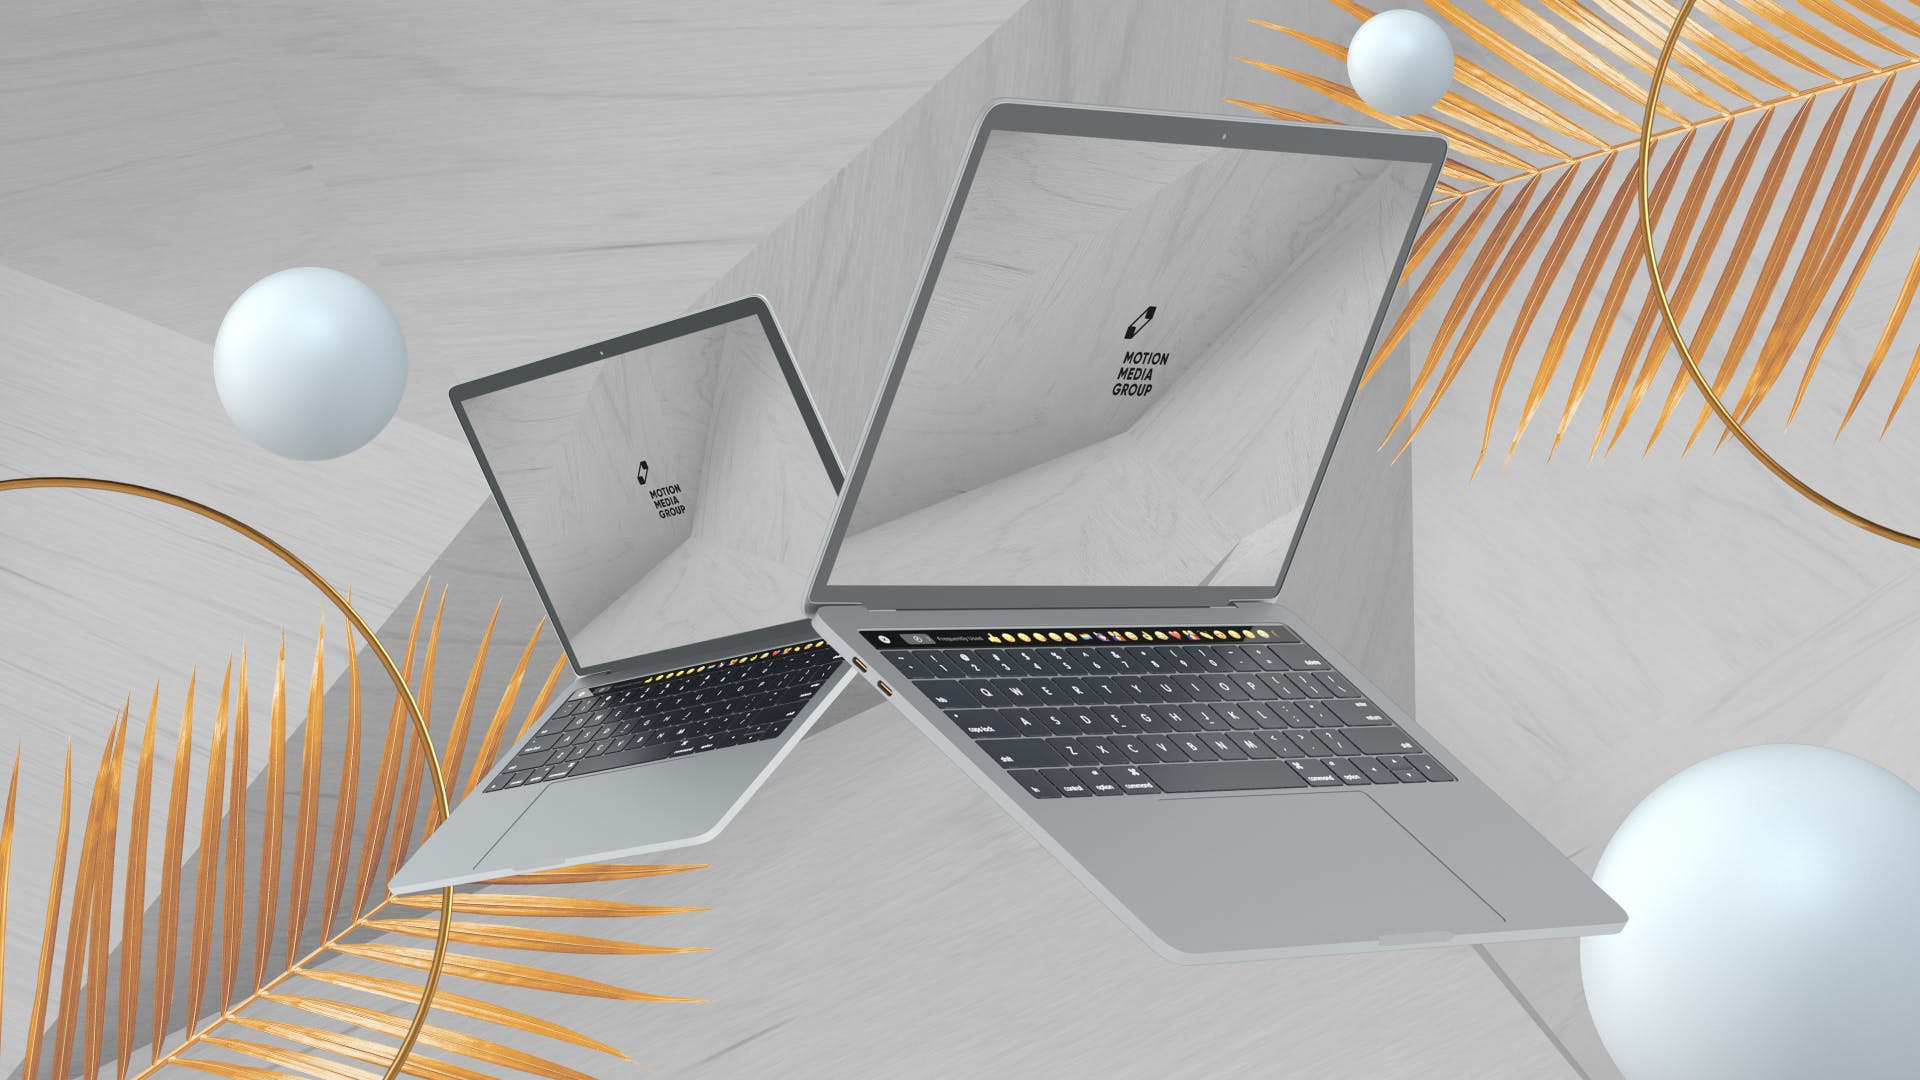 优雅时尚风格3D立体风格笔记本电脑屏幕预览素材库精选样机 10 Light Laptop Mockups插图(7)